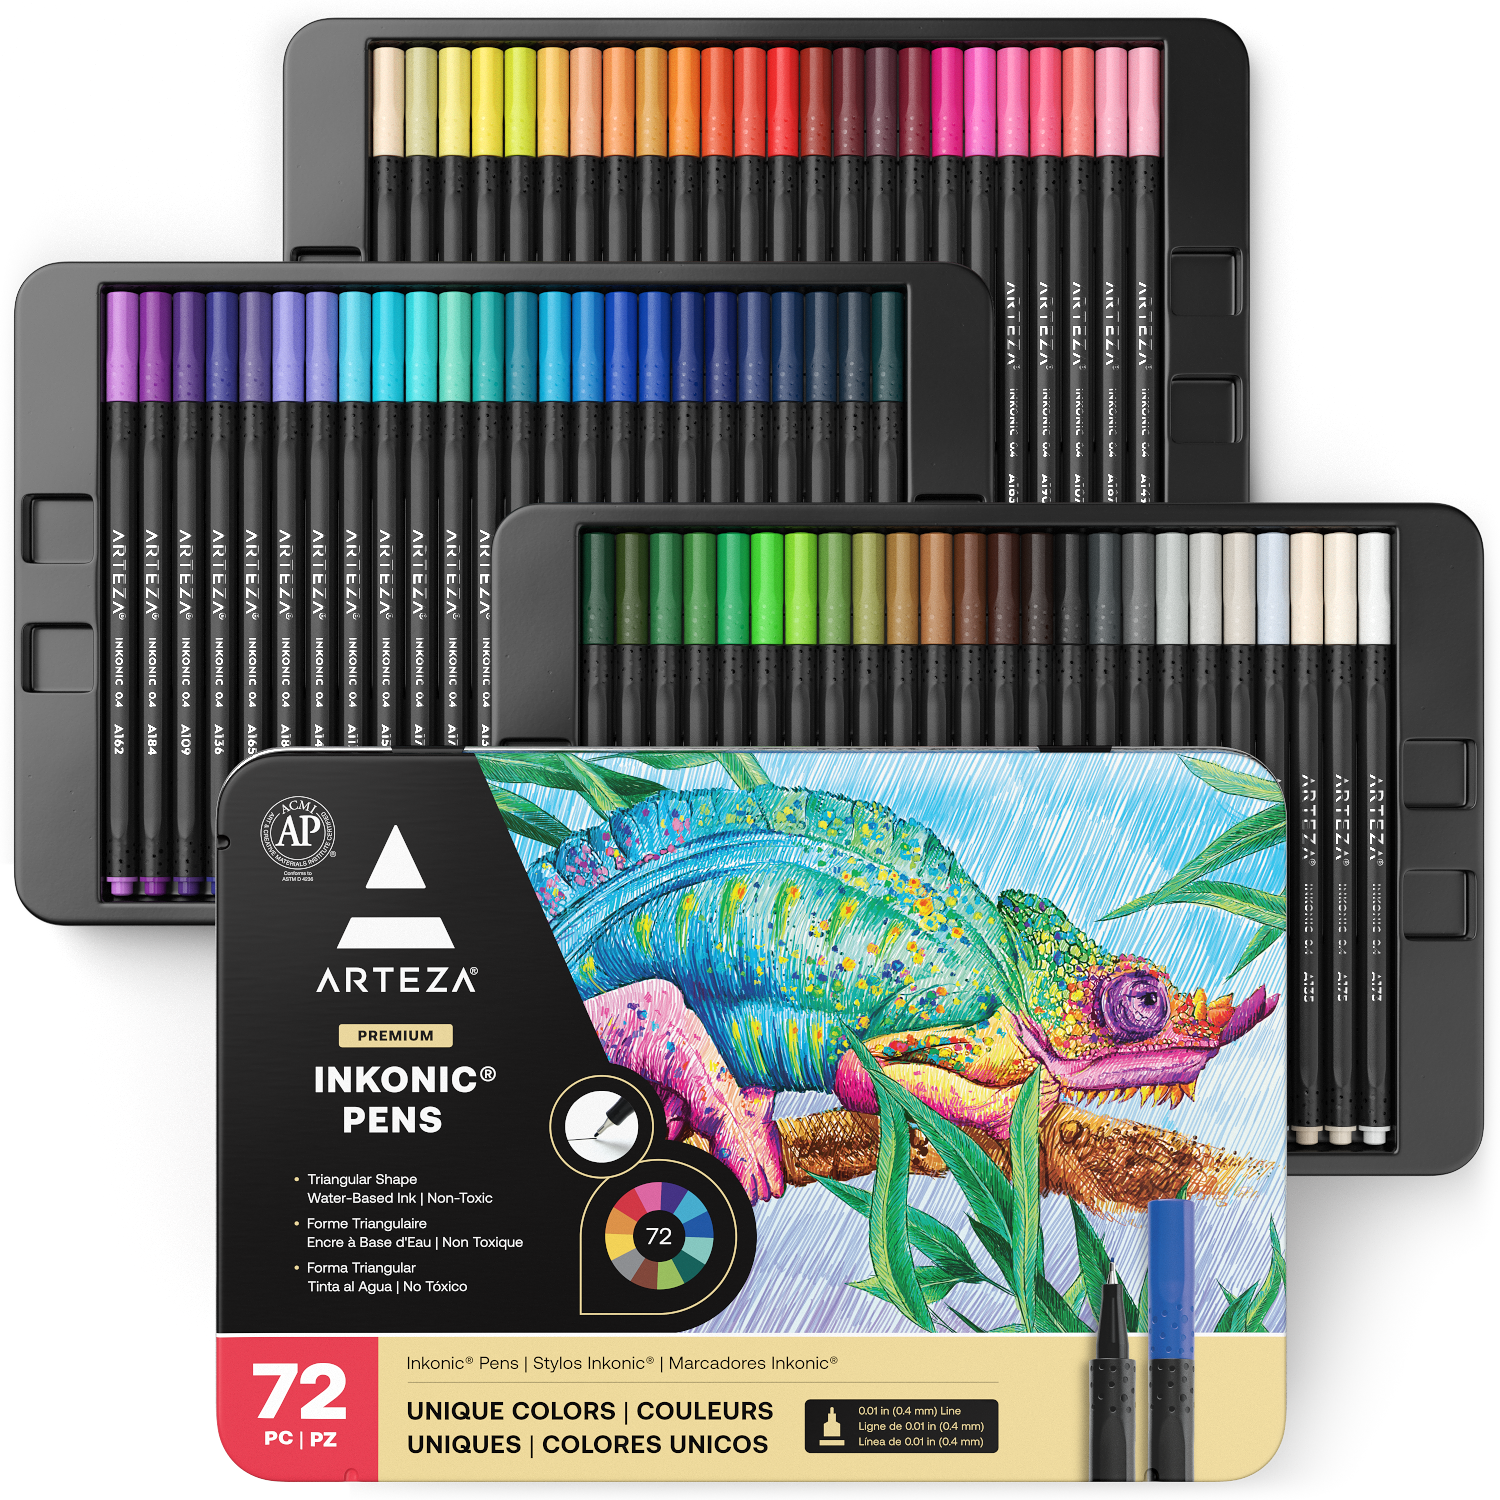 5pc Fineliner Color Pens Set - Young Art Lessons